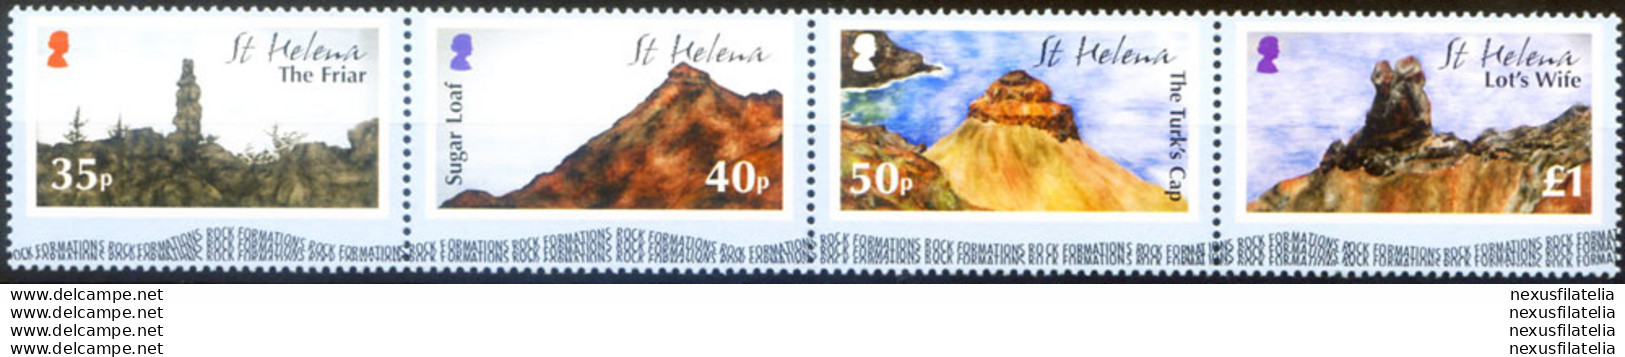 Formazioni Rocciose 2005. - St. Helena